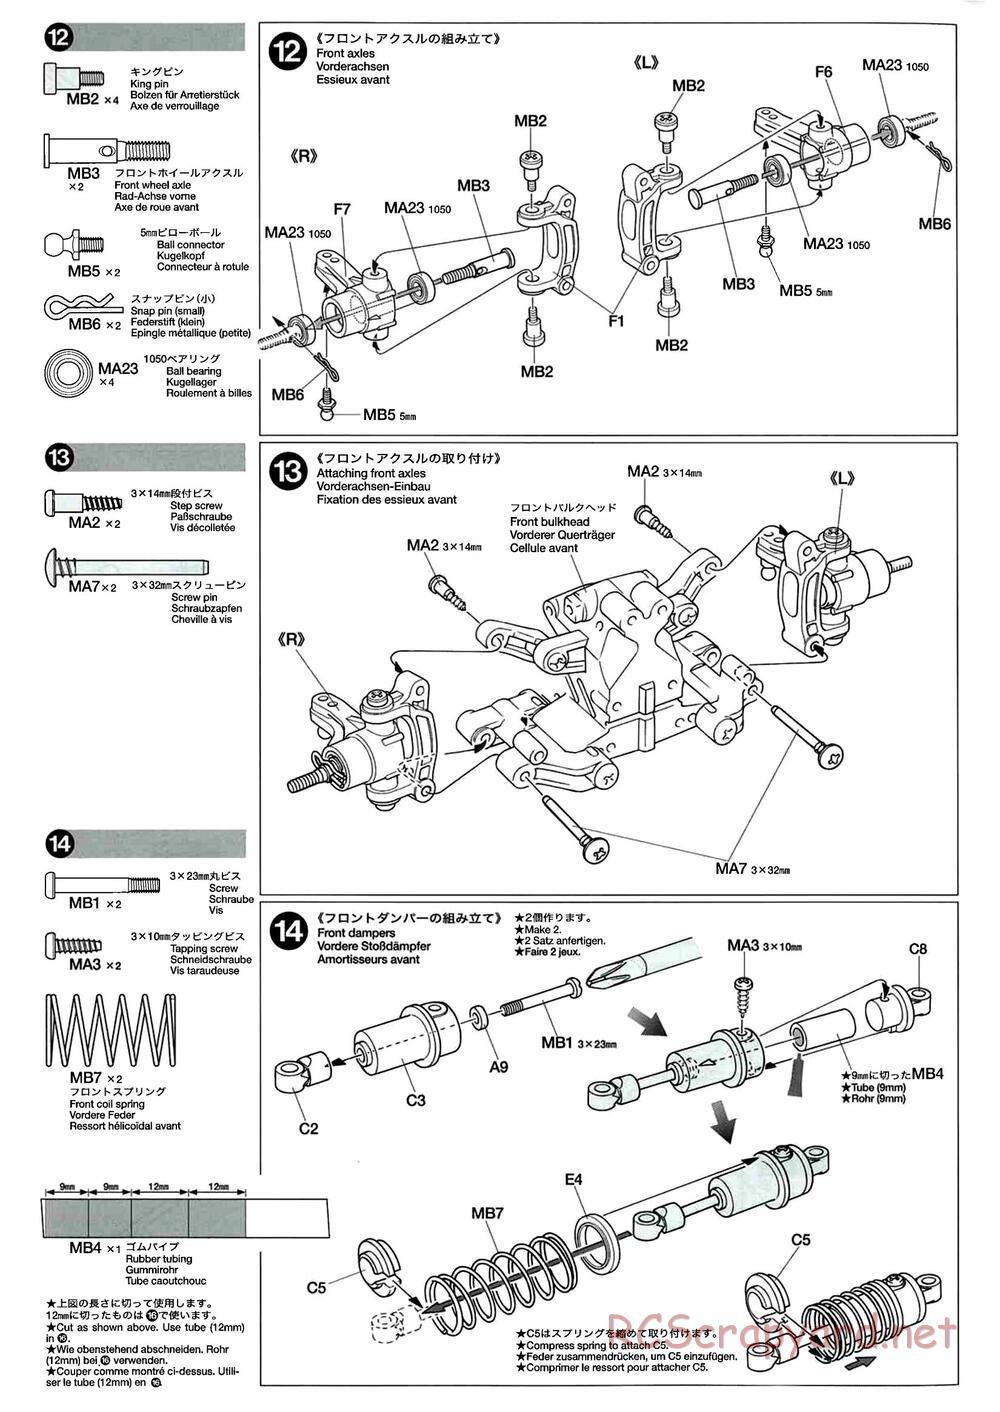 Tamiya - M-04L Chassis - Manual - Page 8